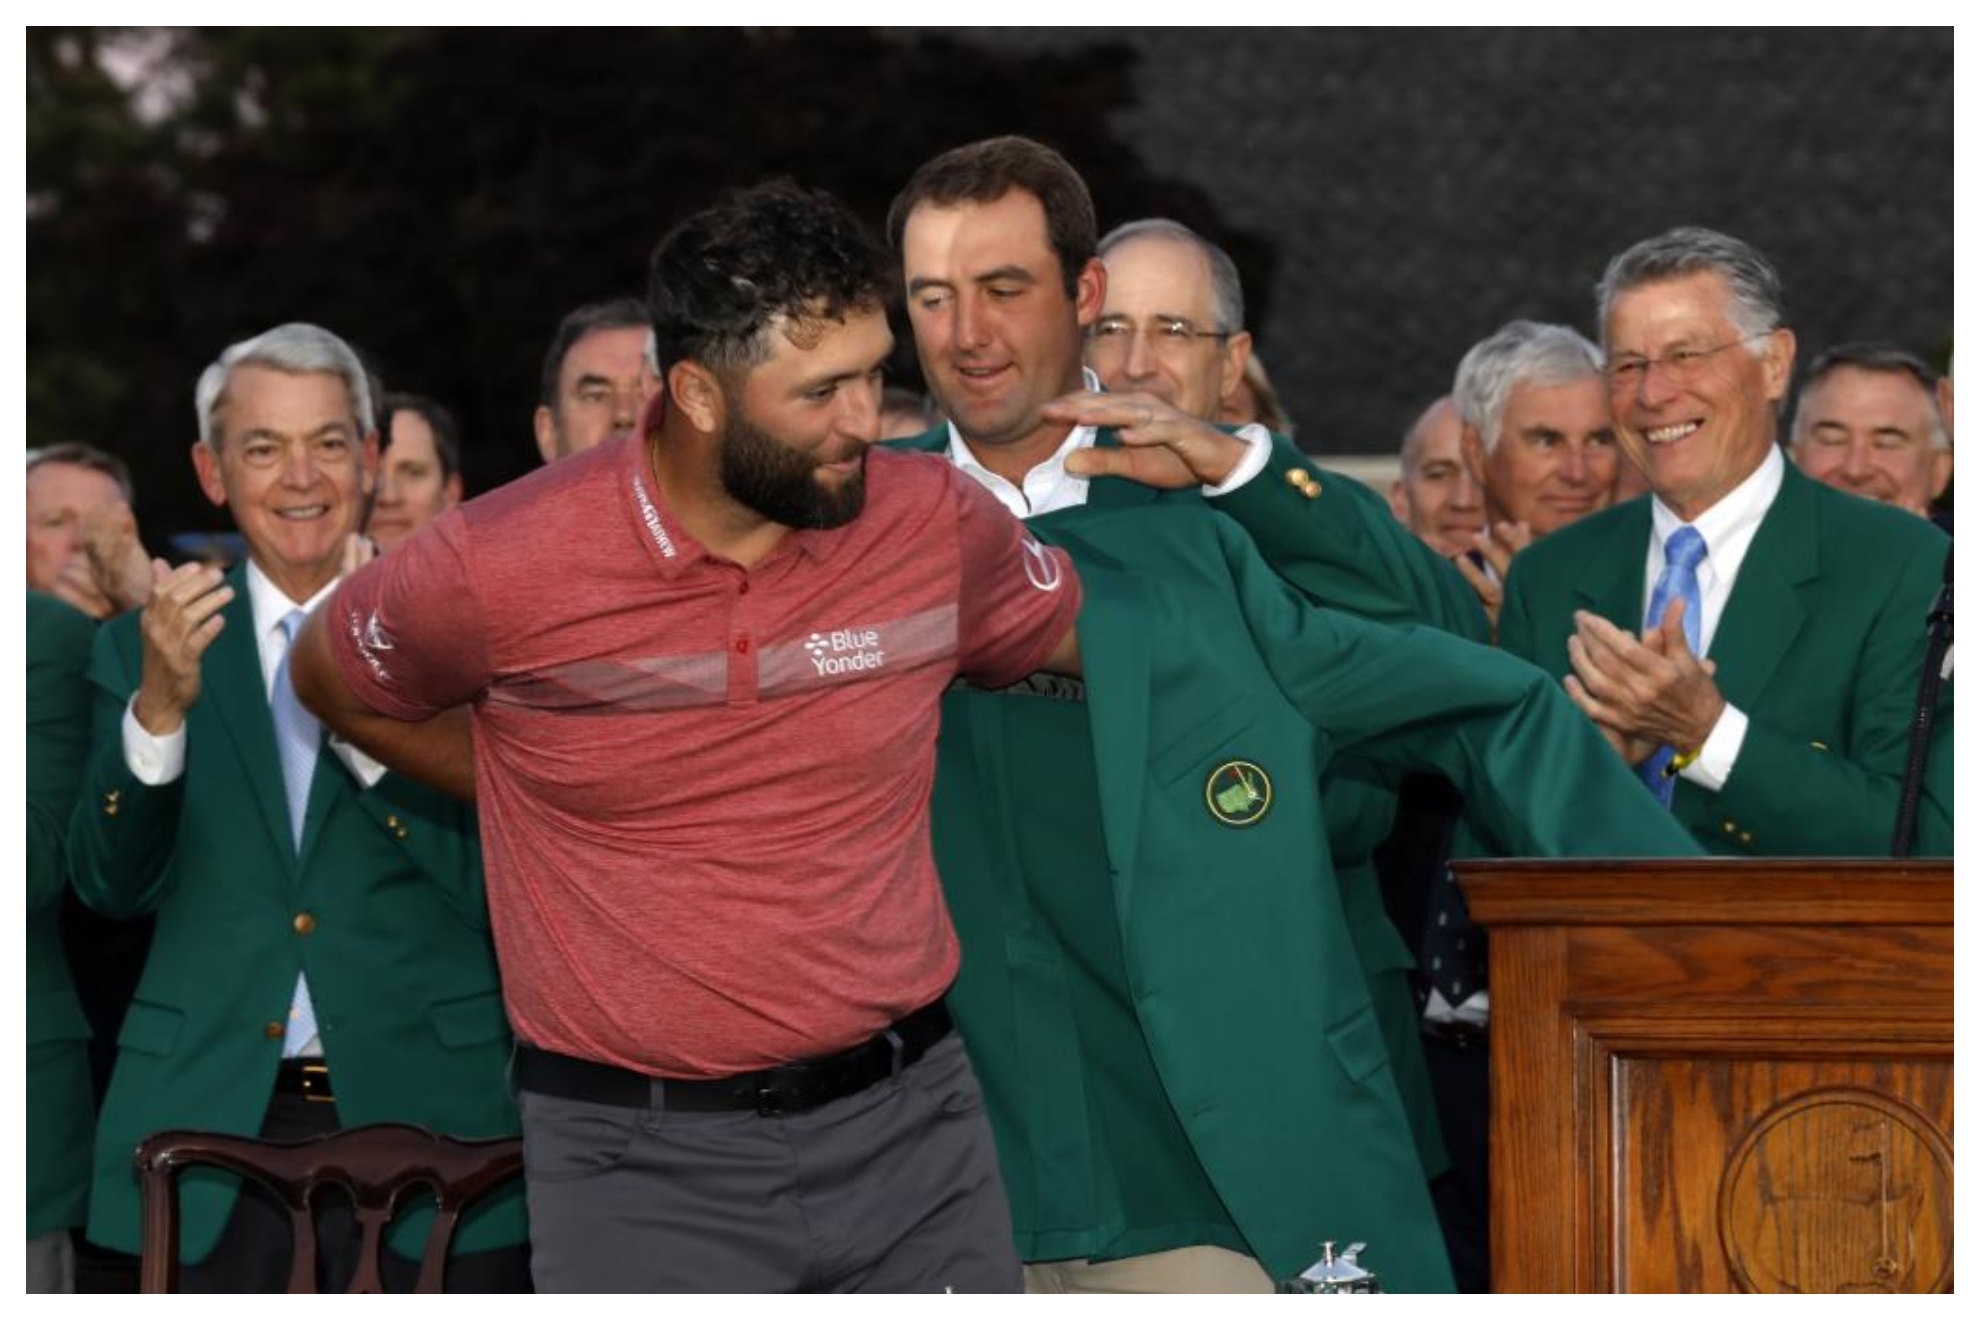 Las mejores imágenes del décimo grande del golf español